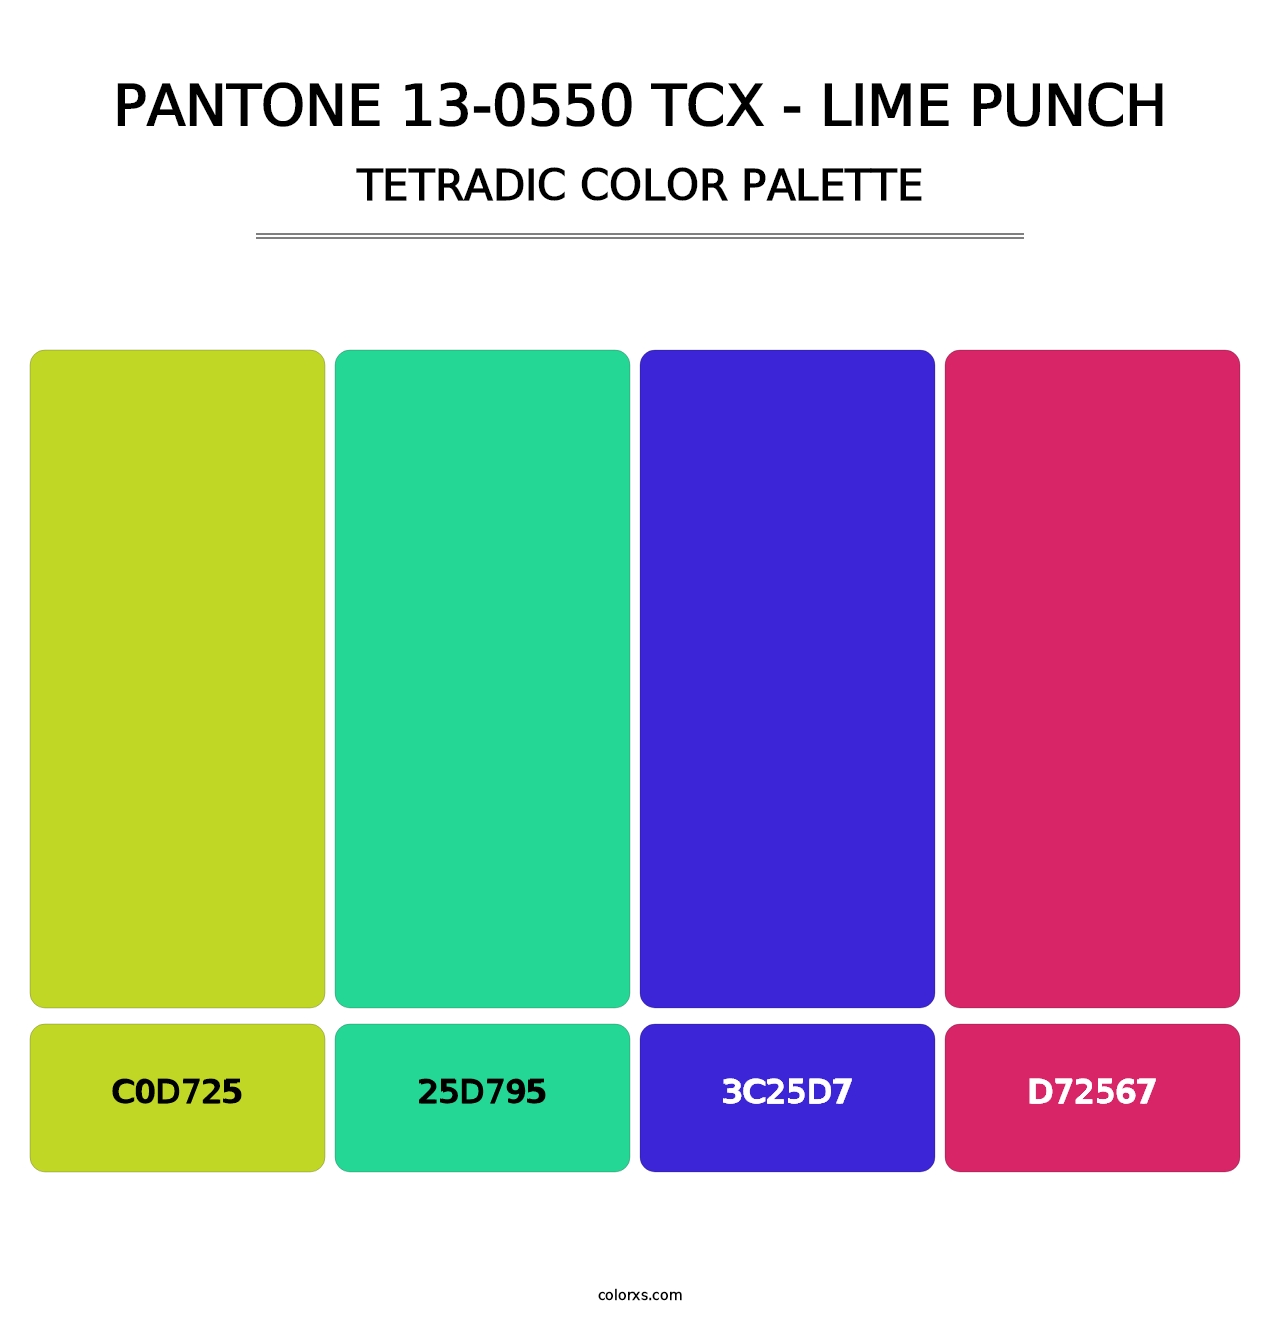 PANTONE 13-0550 TCX - Lime Punch - Tetradic Color Palette